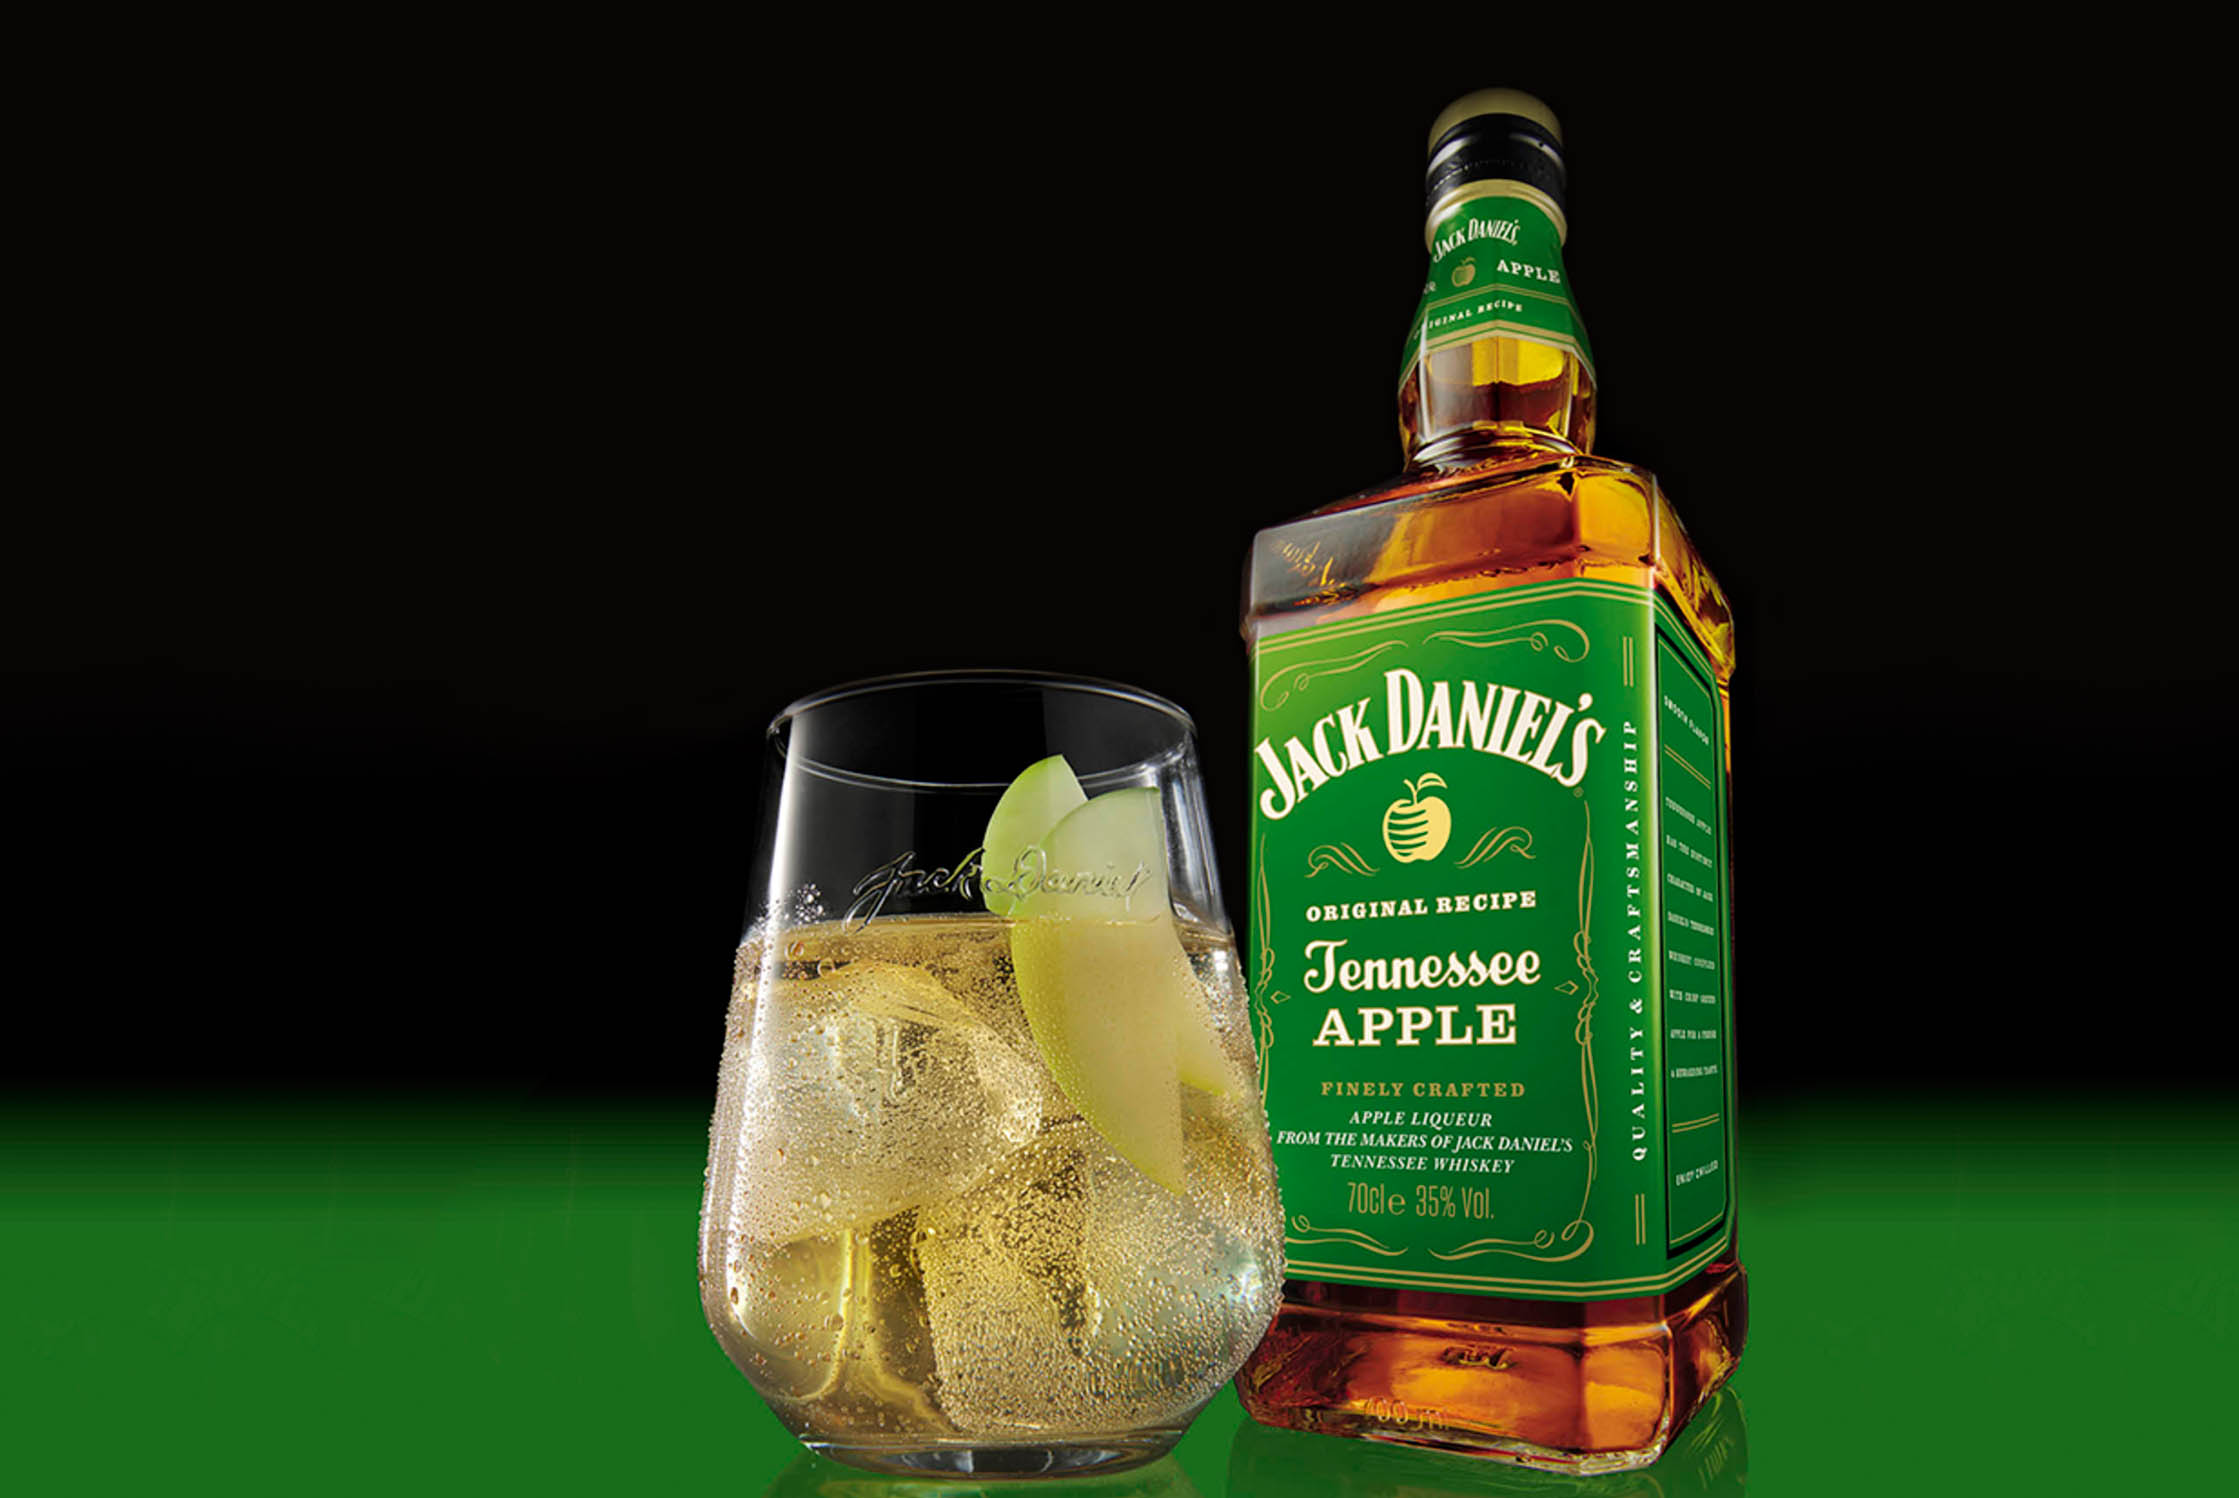 Eine Flasche JACK DANIEL'S Tennessee Apple Whiskey, perfekt gemischt mit saftigem Apfelgeschmack.